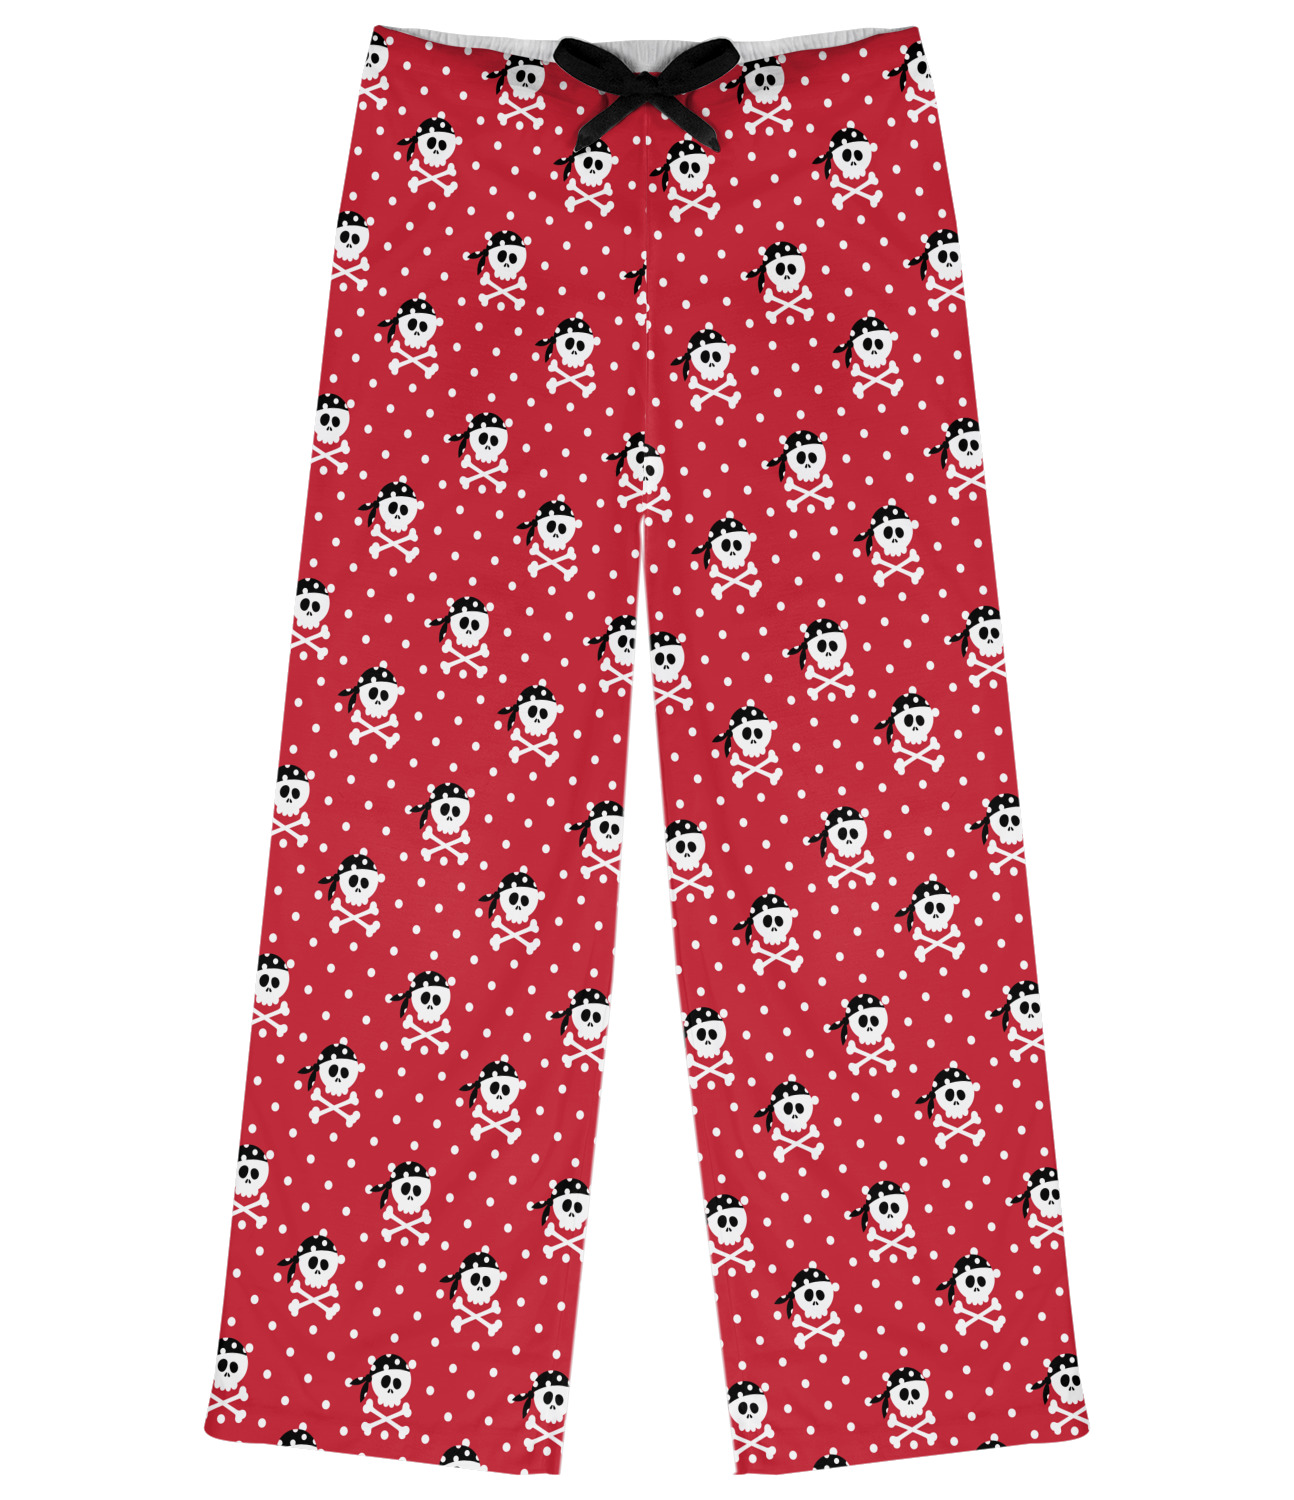 Pirate & Dots Womens Pajama Pants - 2XL (Personalized) - YouCustomizeIt